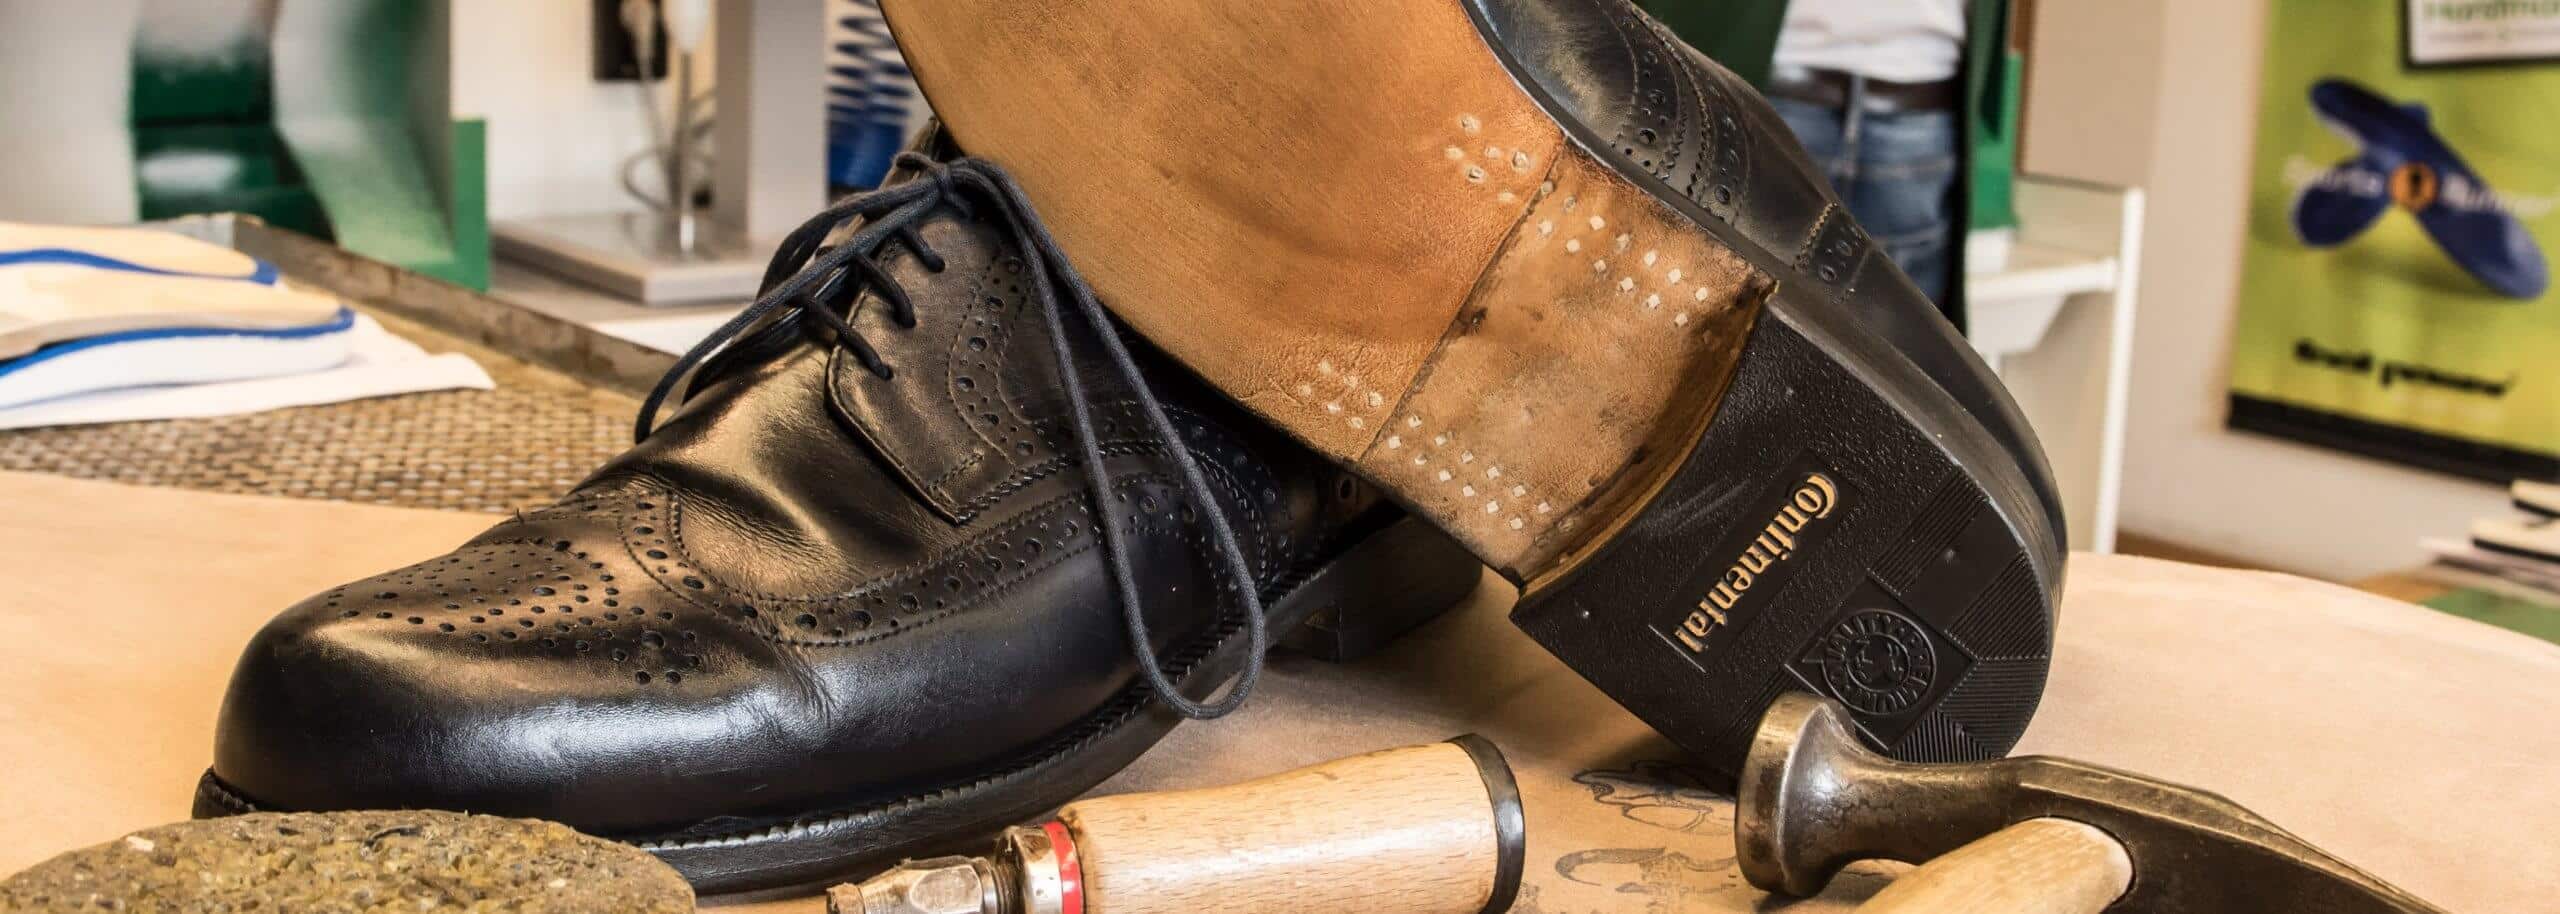 Schuhreparaturen